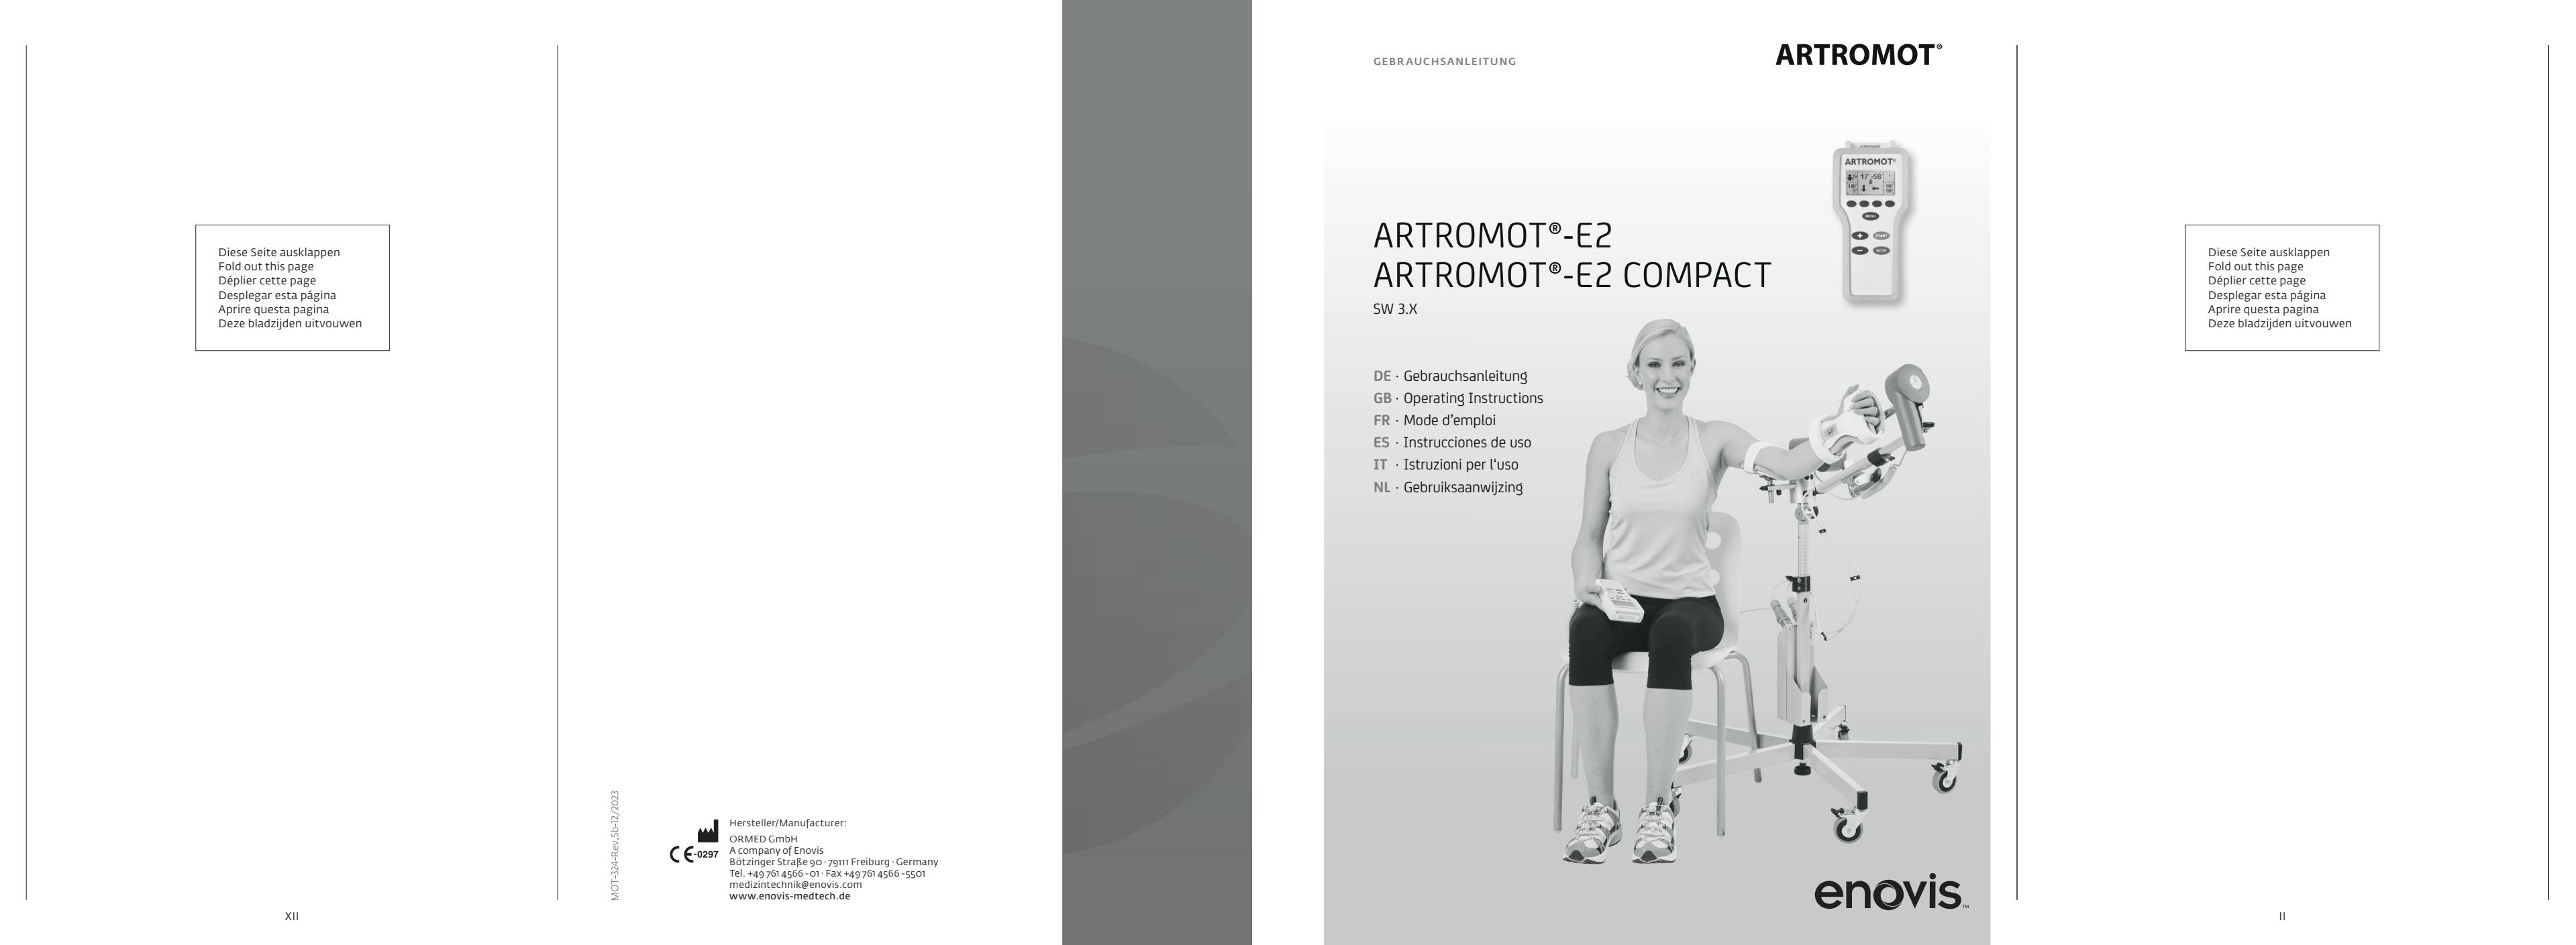 Gebrauchsanleitung_ARTROMOT-E2-&-E2-Compact_MOT-324-REV.5-08-2018.pdf